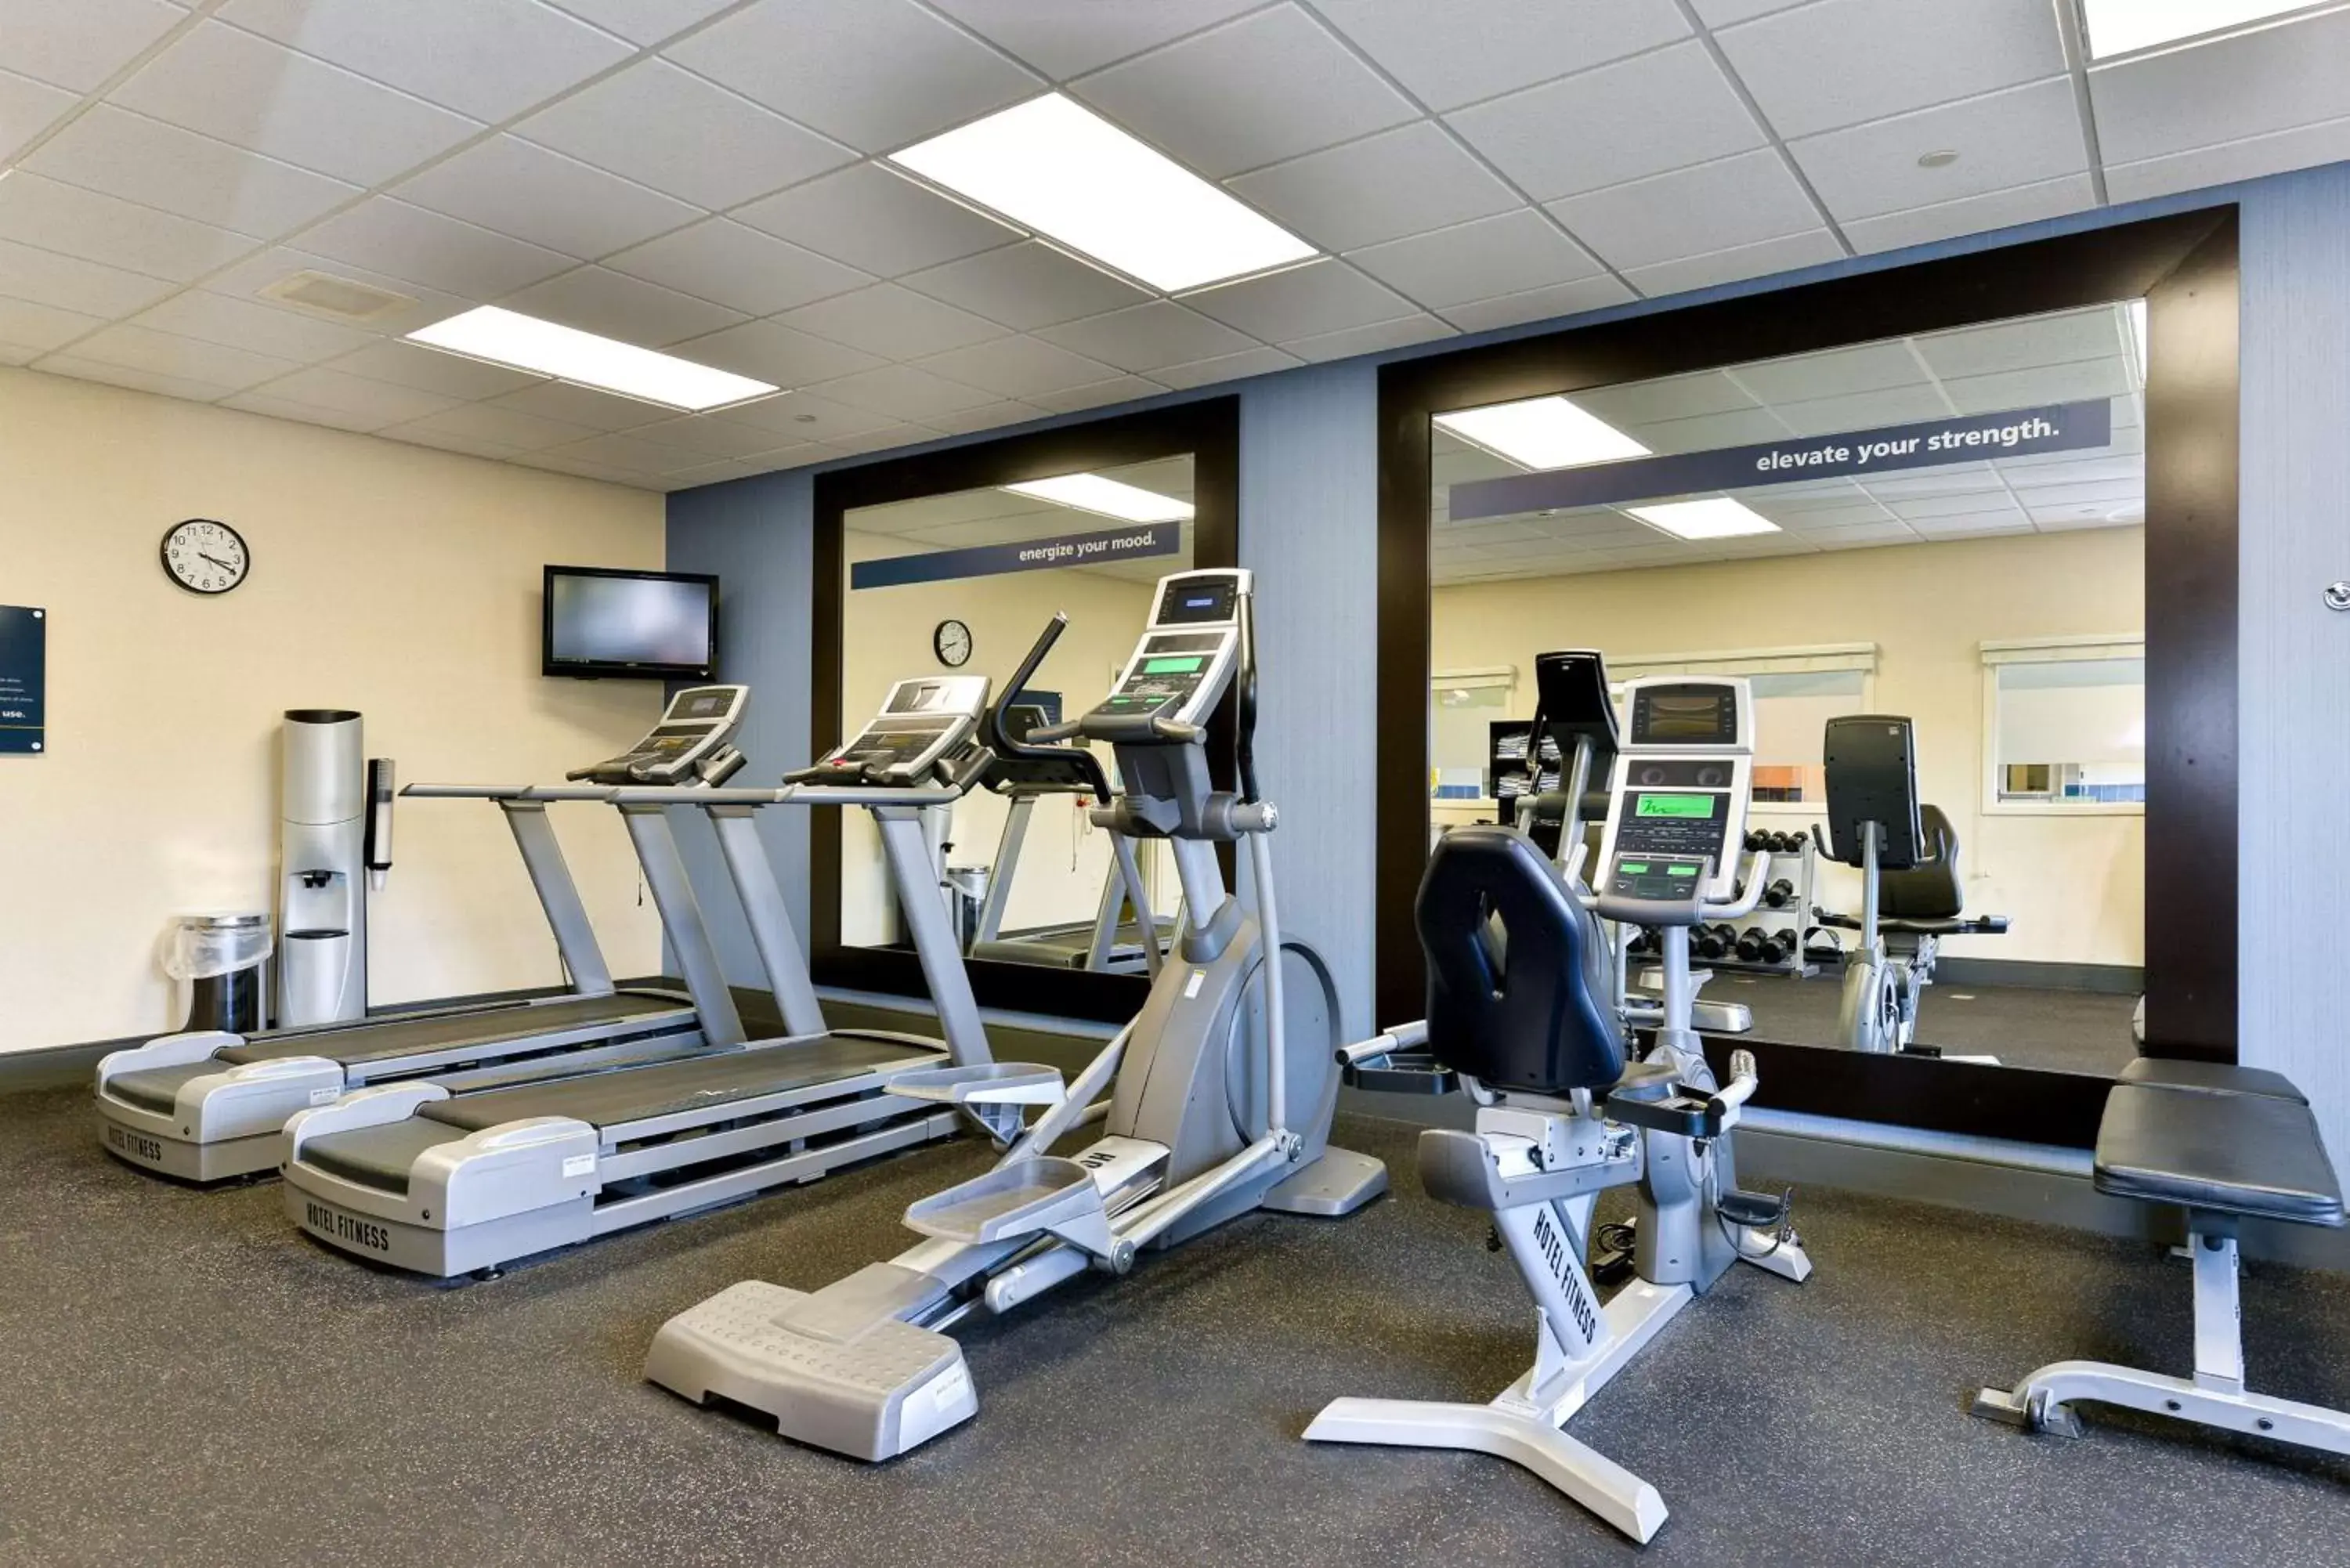 Fitness centre/facilities, Fitness Center/Facilities in Hampton Inn Ellsworth